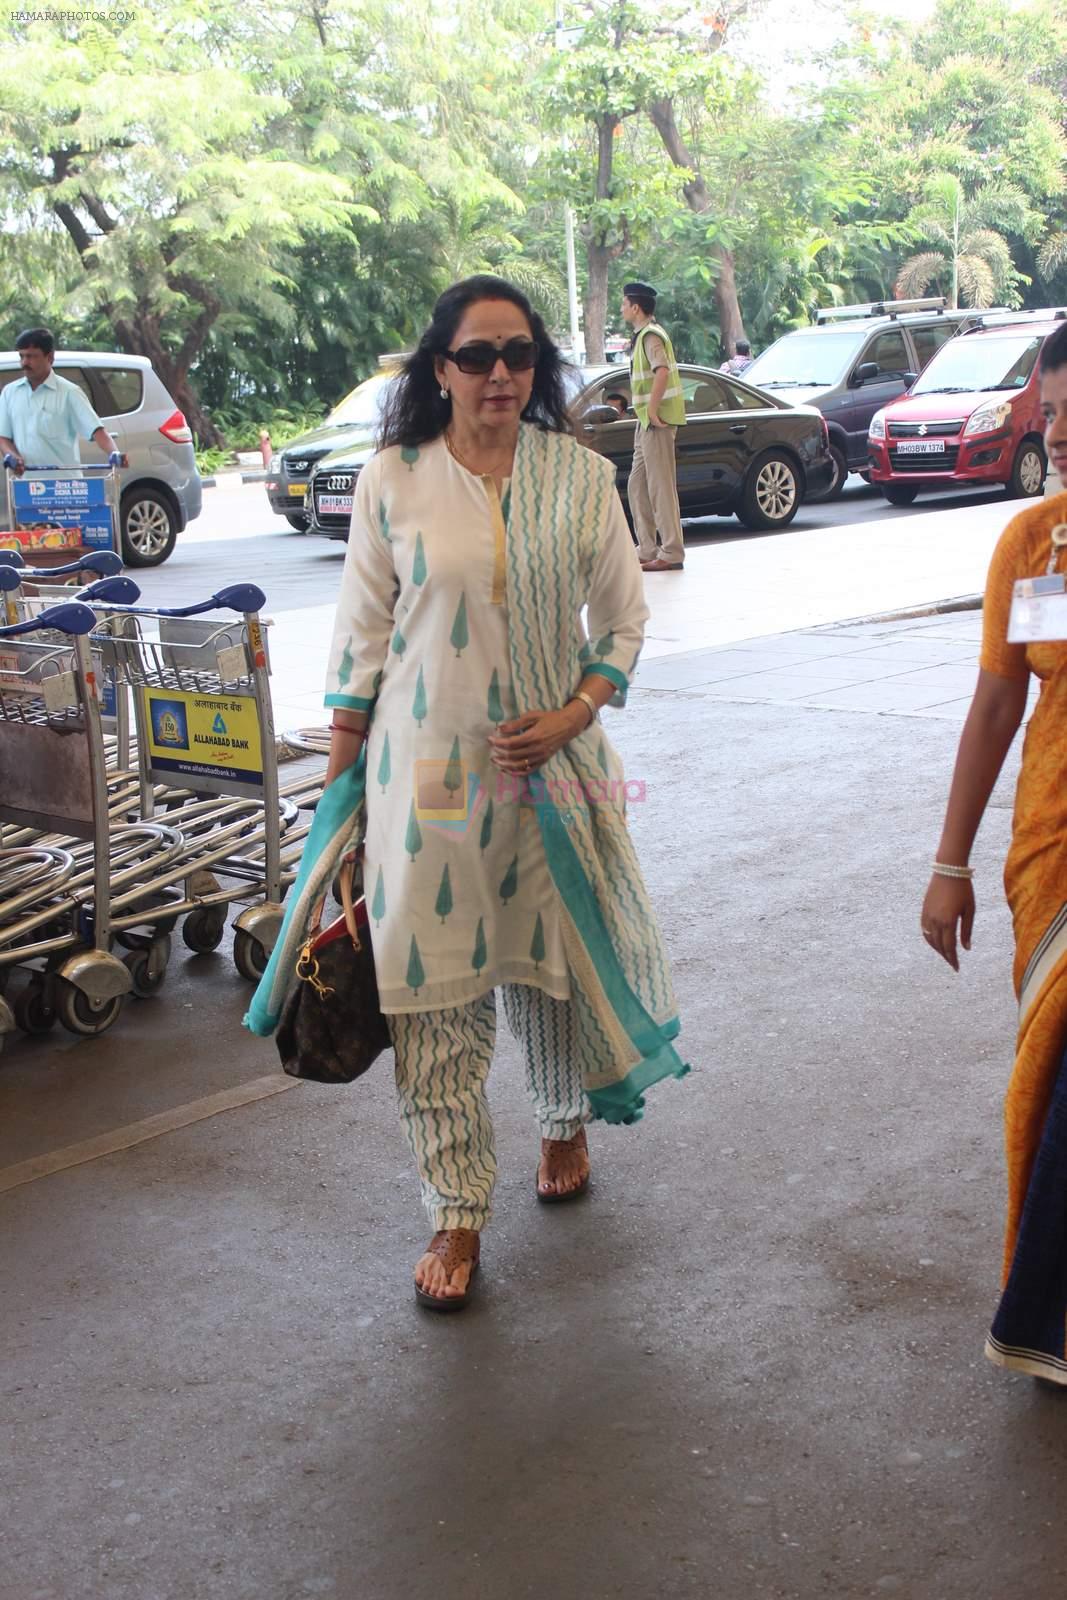 hema Malini snapped at airport in Mumbai on 5th May 2015